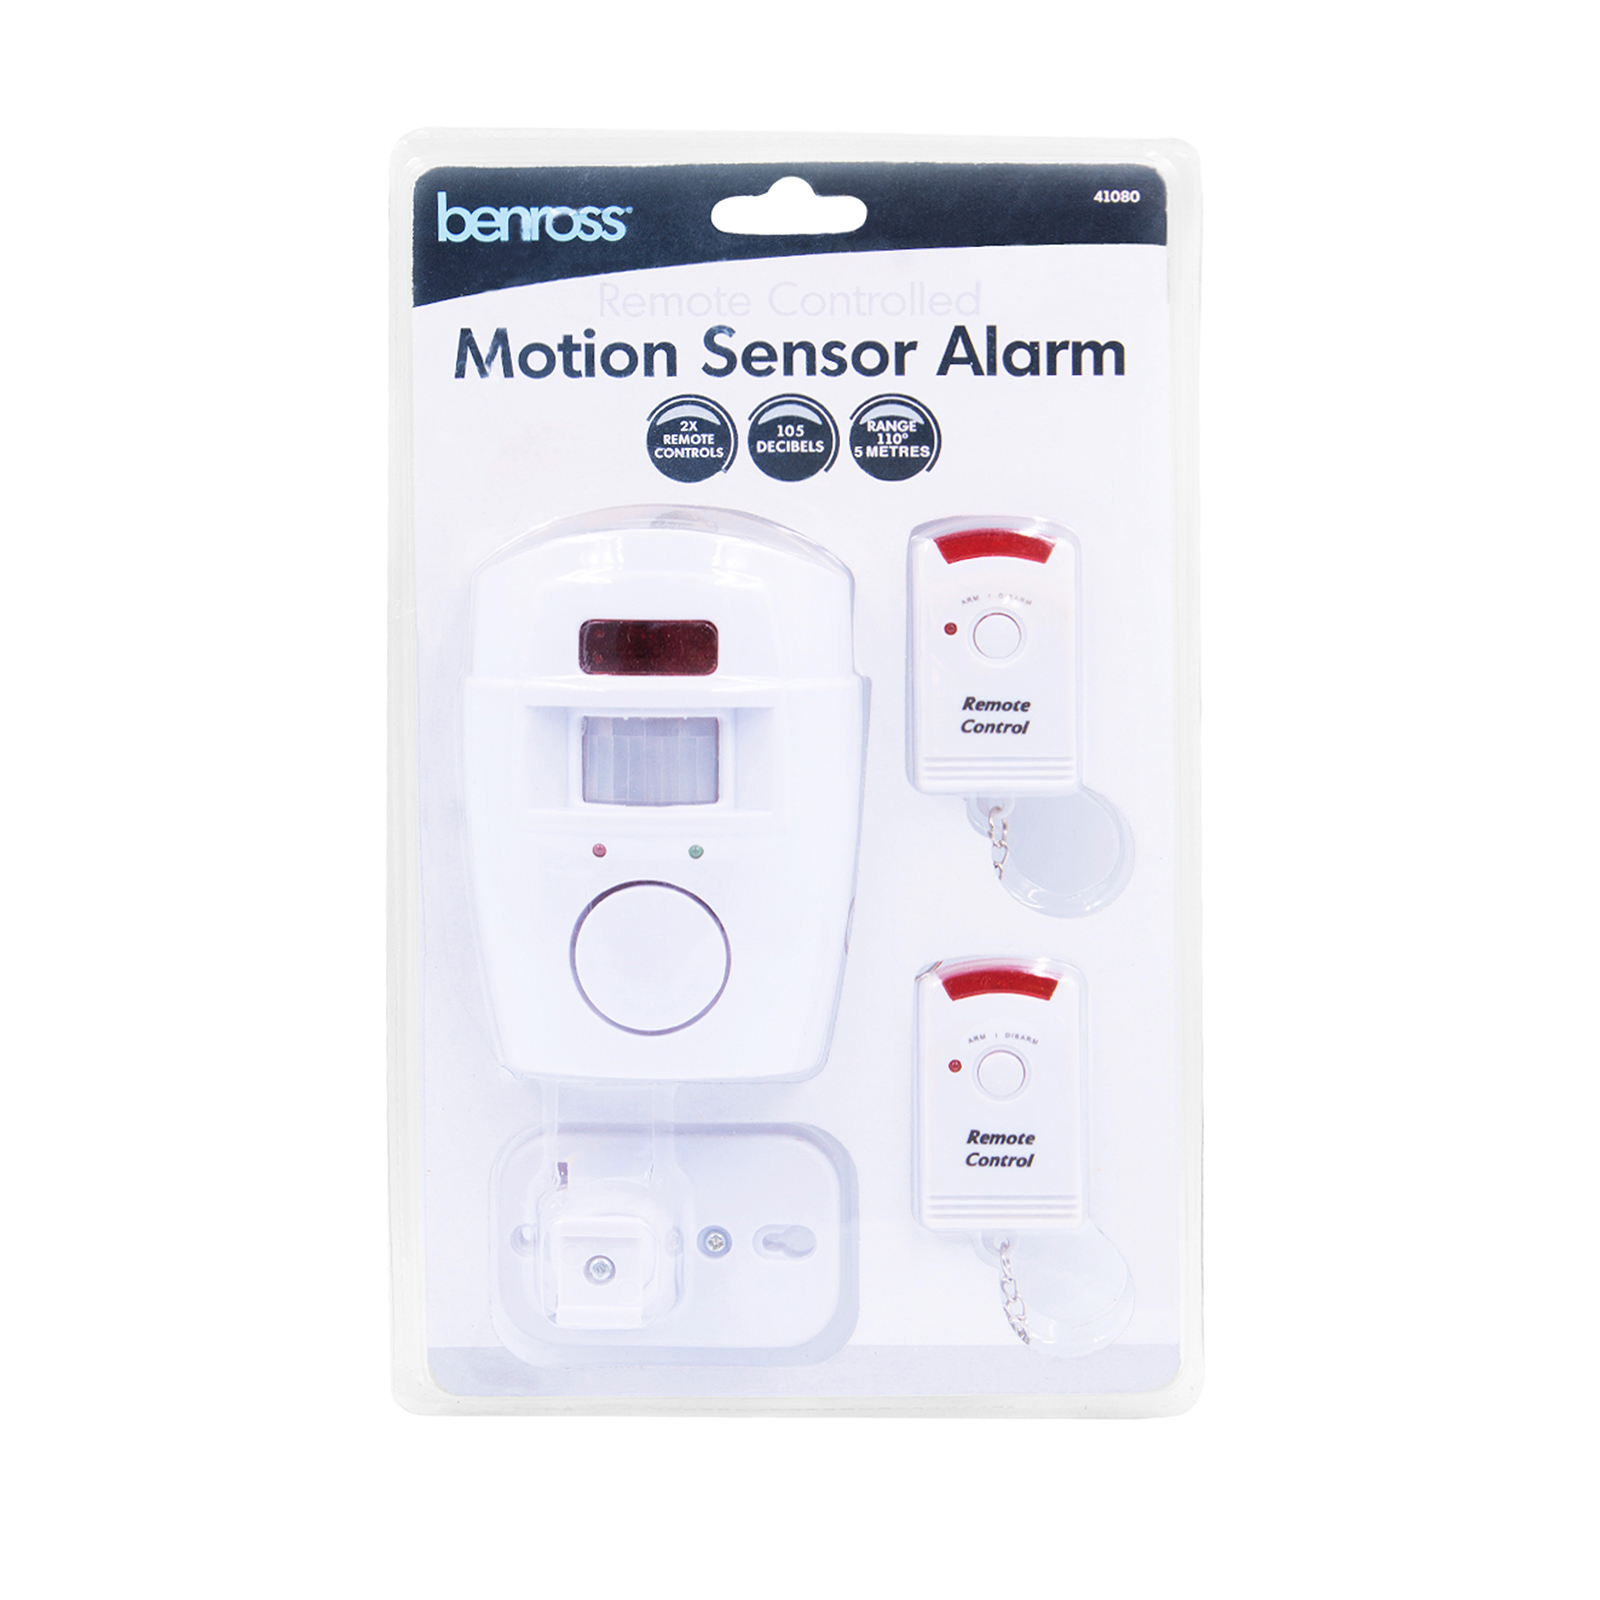 Benross Motion Sensor Alarm 41080